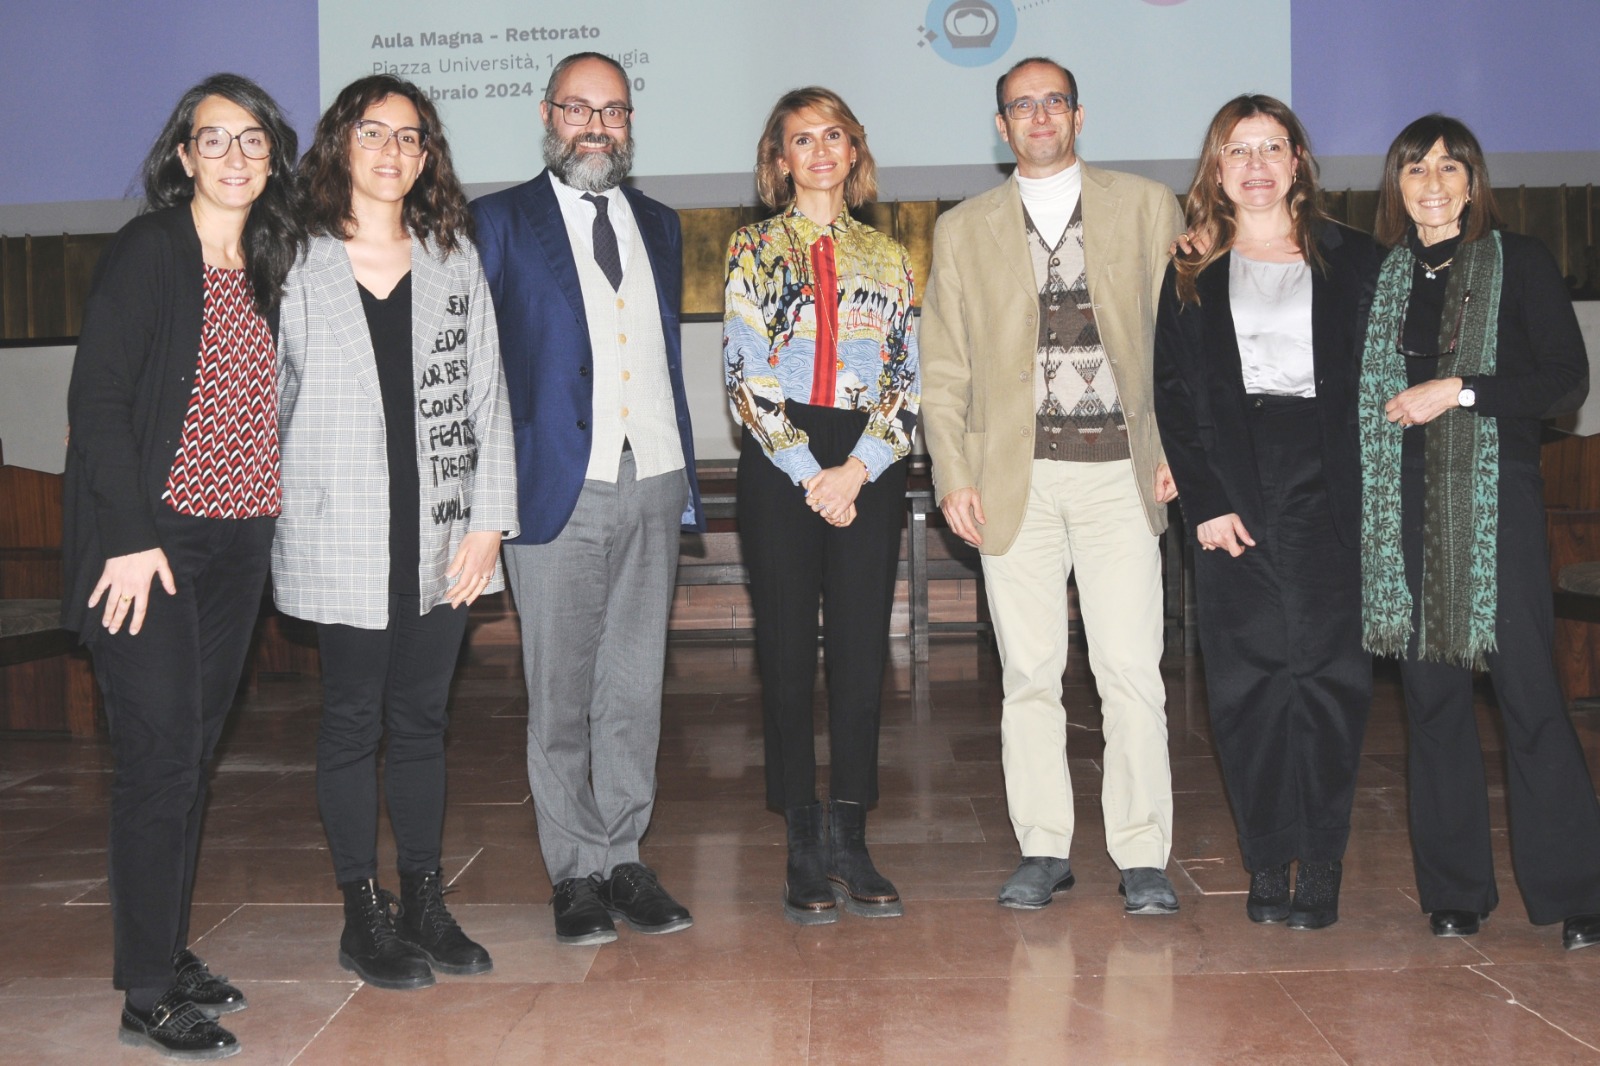 “Mulheres na Ciência”: A Universidade de Perugia celebra o “Dia Internacional das Mulheres e Meninas na Ciência” e entrega o “Prêmio Ursula Grauman”